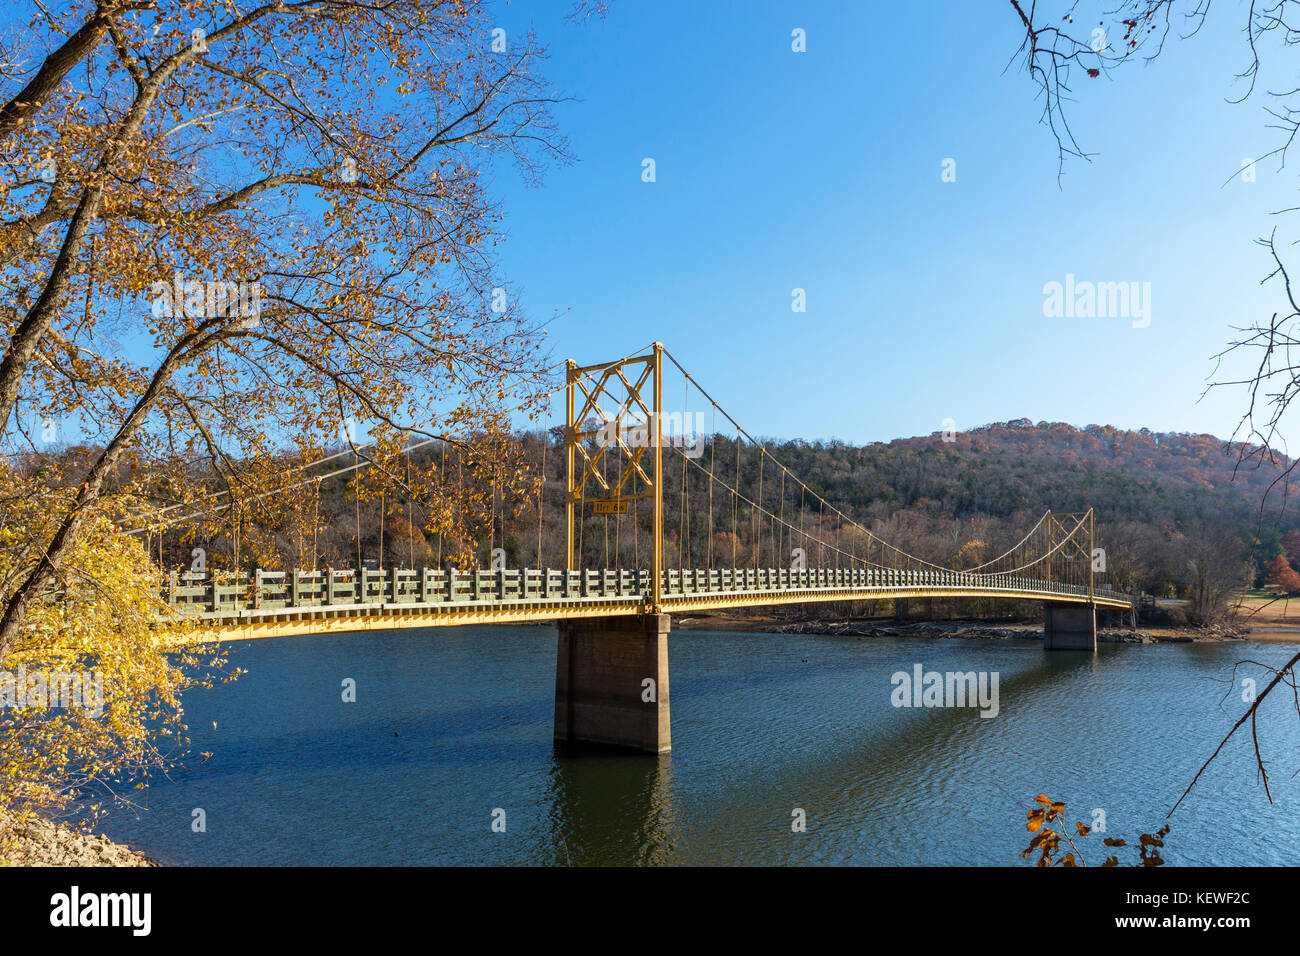 Castor historique pont sur la Rivière Blanche, Table Rock Lake, Beaver, monts Ozark, Arkansas, États-Unis Banque D'Images